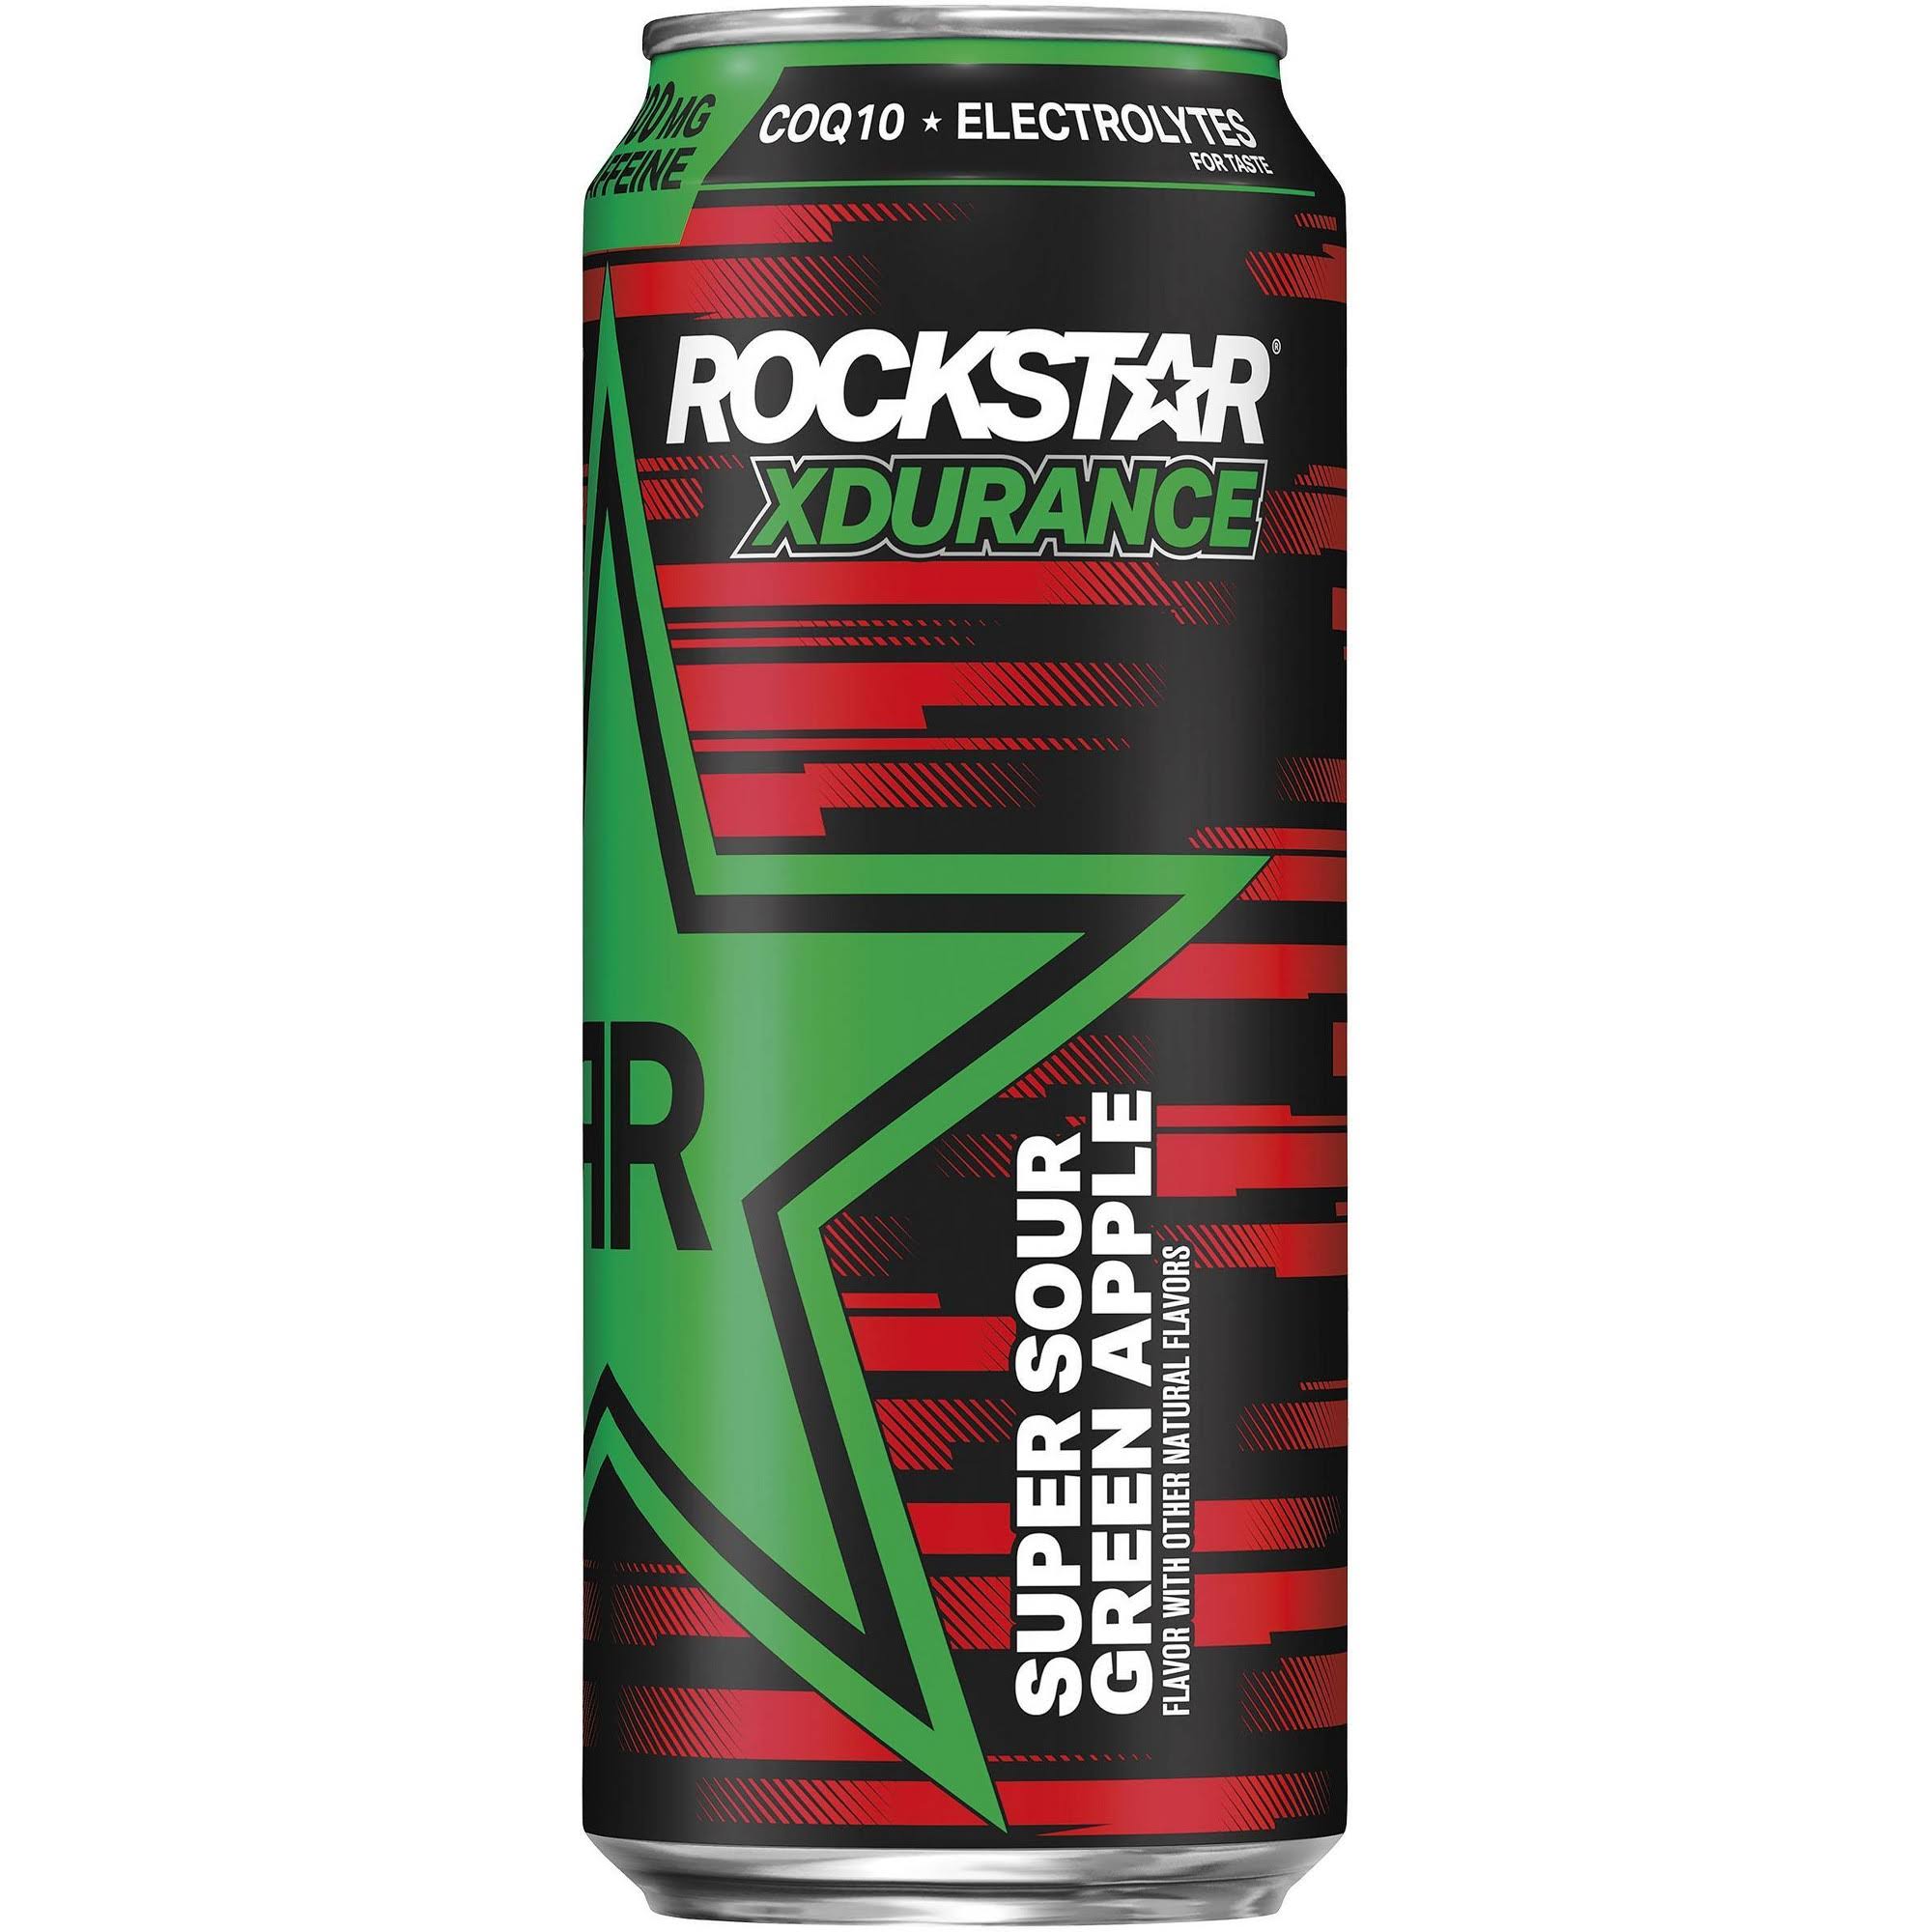 Rockstar Xdurance Energy Drink, Sugar Free, Super Sour Green Apple - 16 fl oz